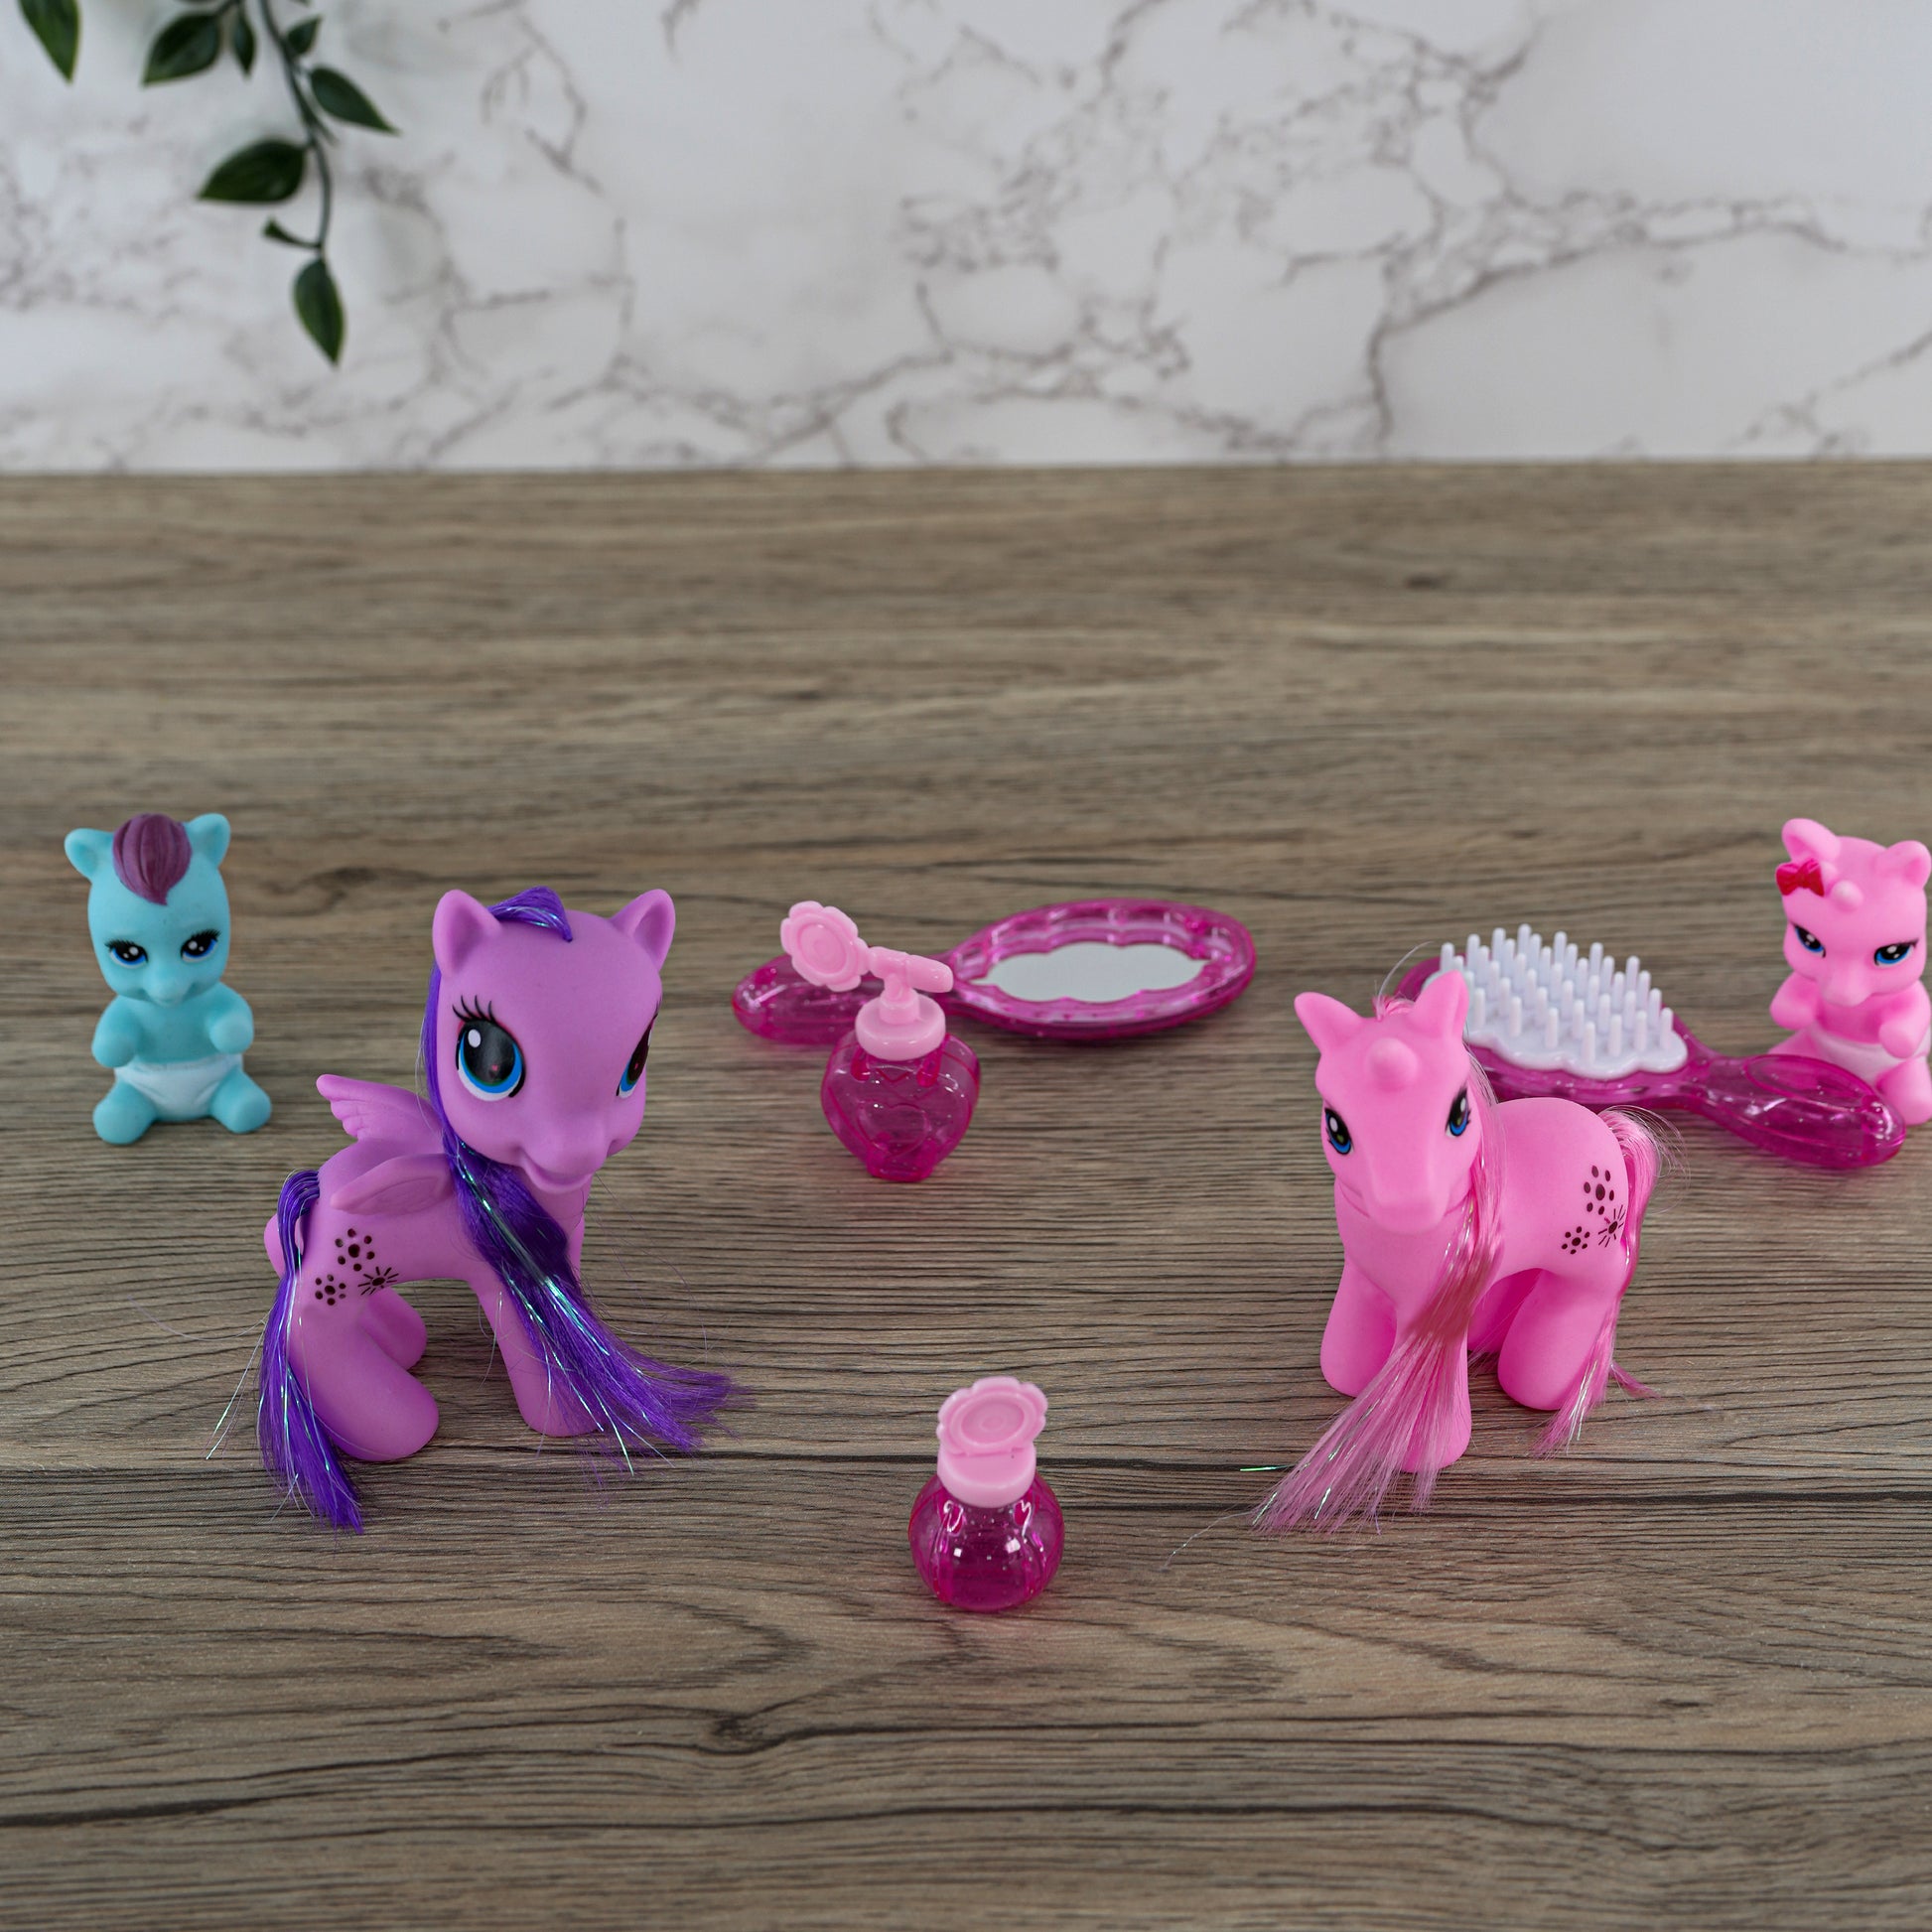 Unicorn Family Playset by The Magic Toy Shop - UKBuyZone